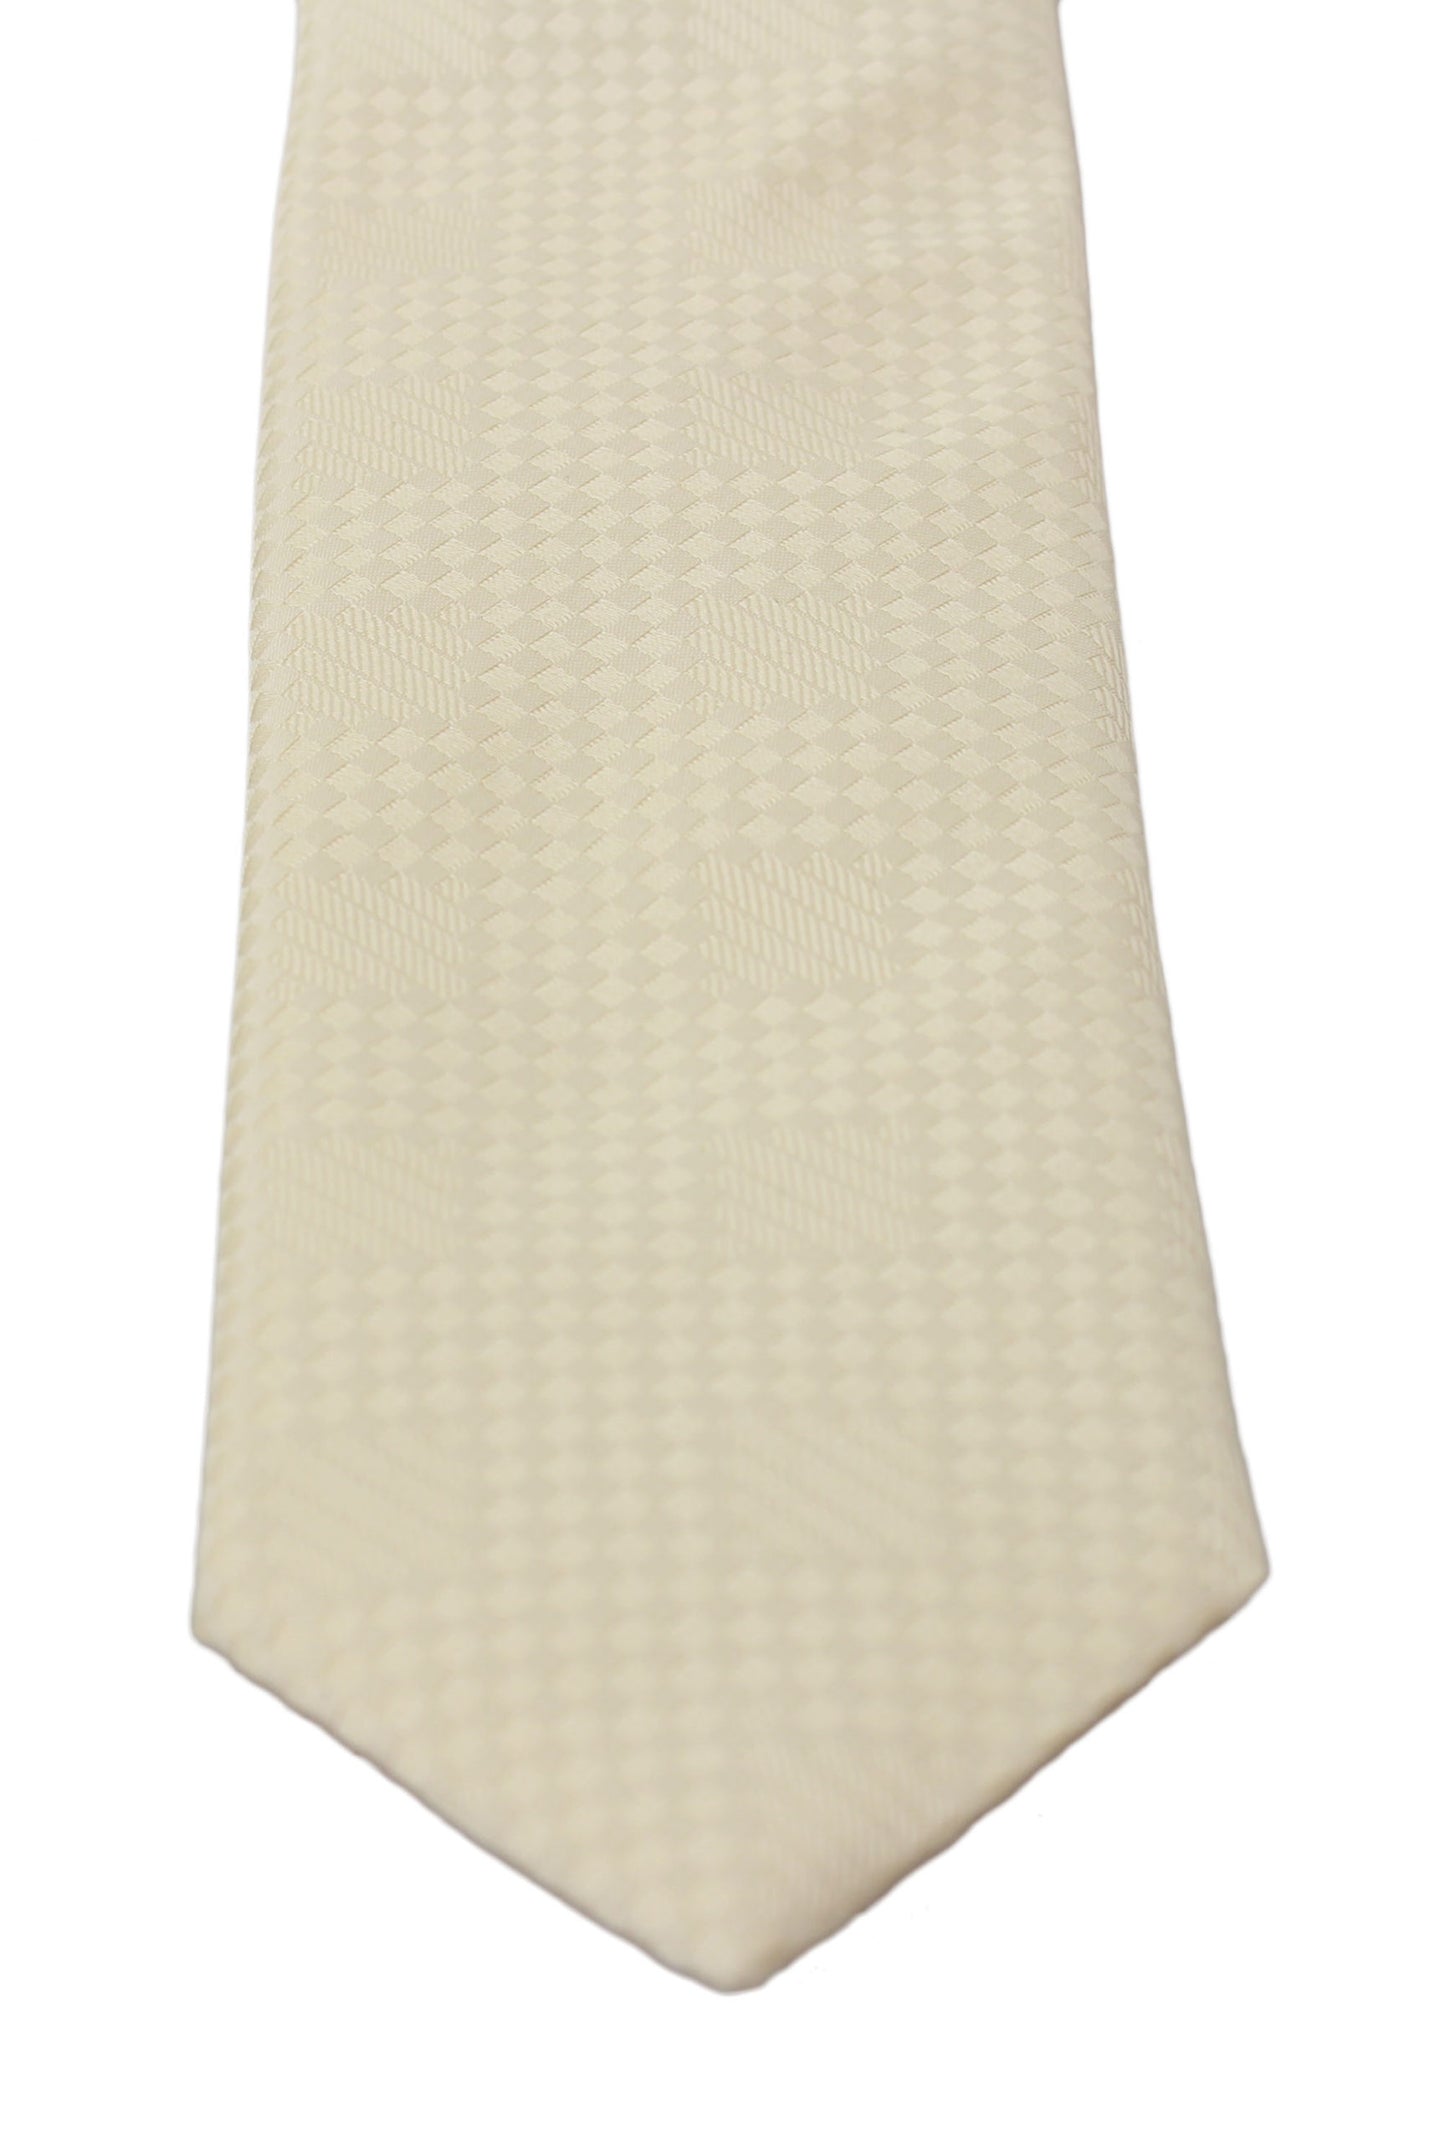 Cream Beige Pattern Classic Mens Slim Necktie Tie